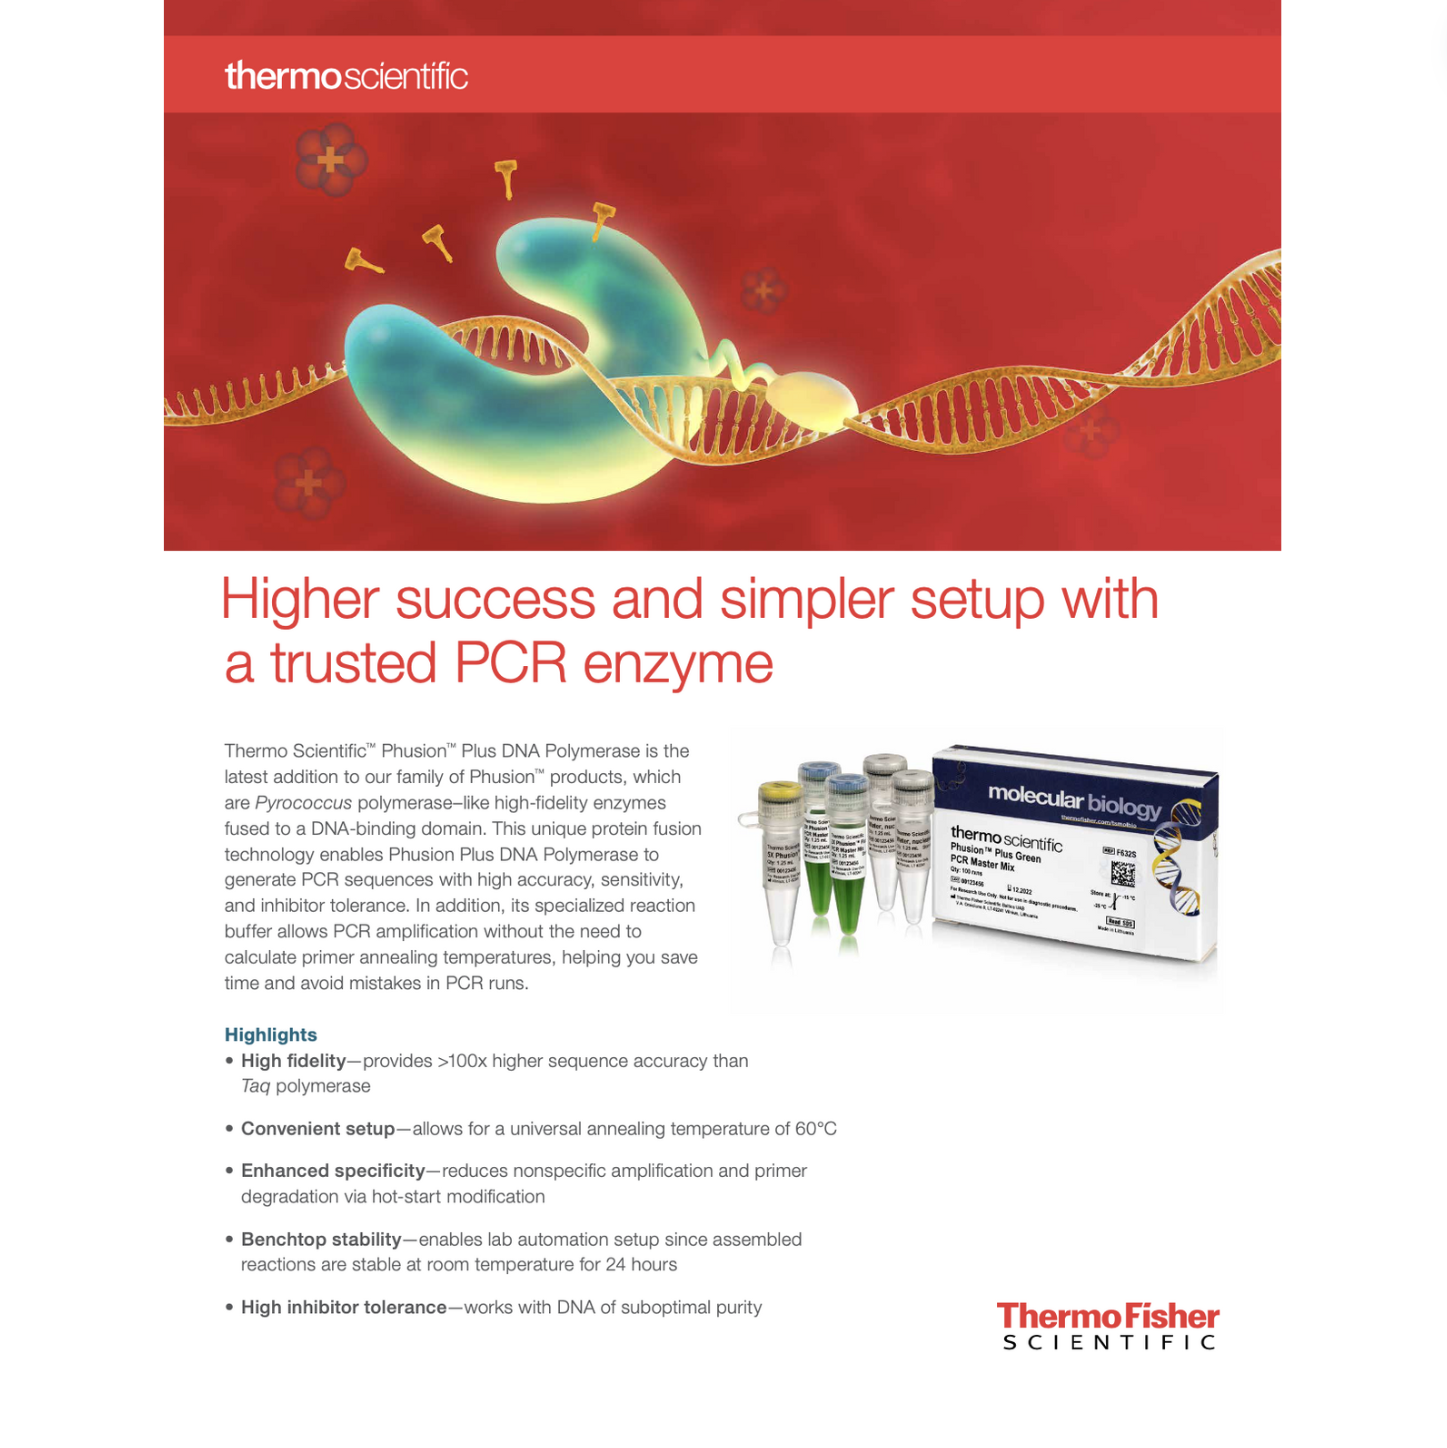 Molecular Biology, Phusion Plus, PCR Enzyme